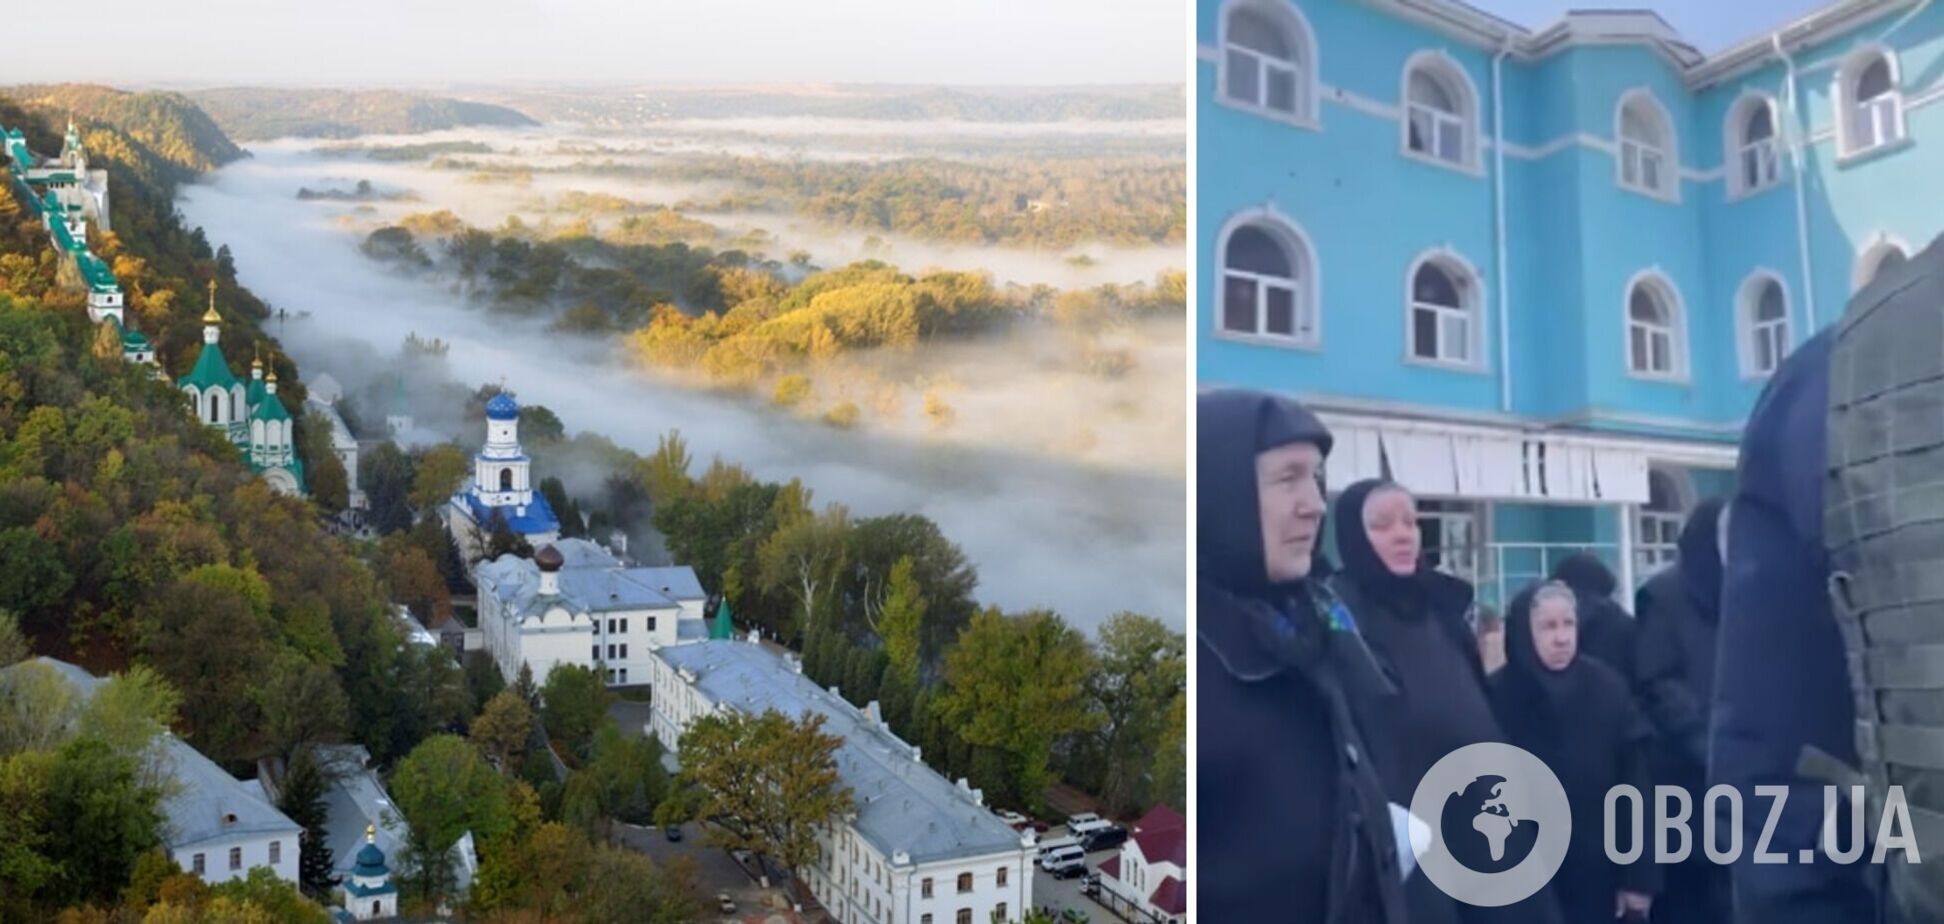 Руссияне уничтожили храм в Донецкой области: эвакуировано около 100 служителей. Видео